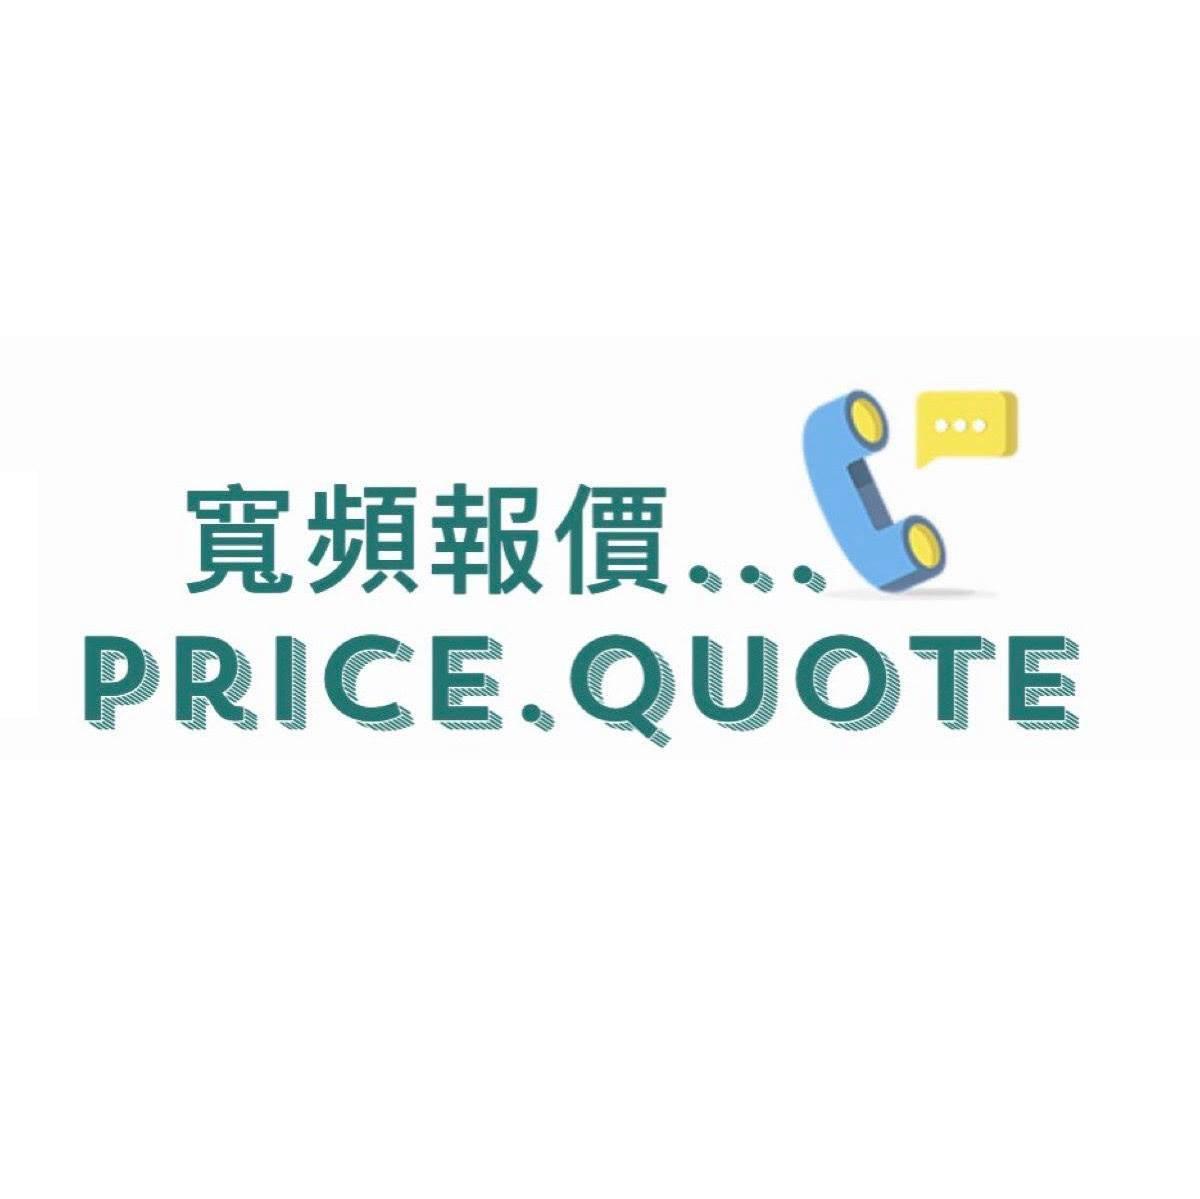 寬頻報價/PriceQuote Logo